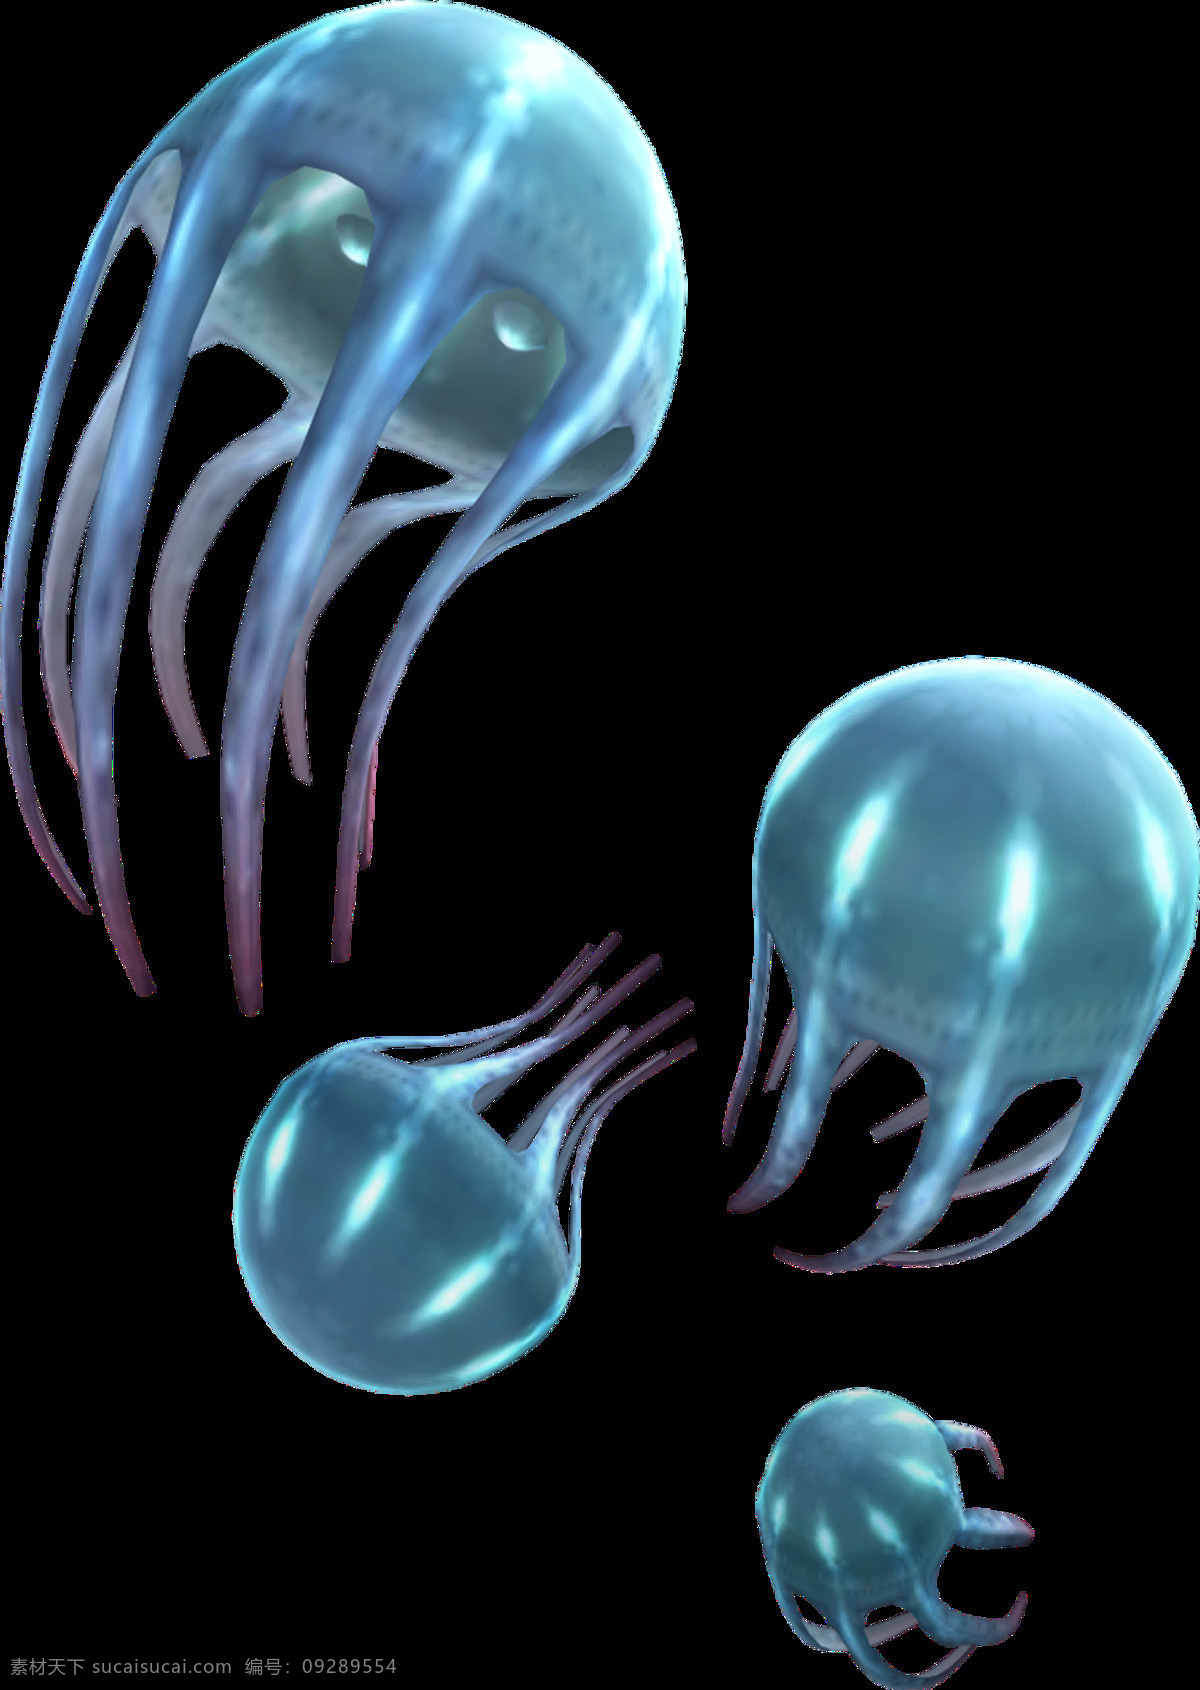 水母图片 水母 海蜇 png图 透明图 免扣图 透明背景 透明底 抠图 生物世界 海洋生物